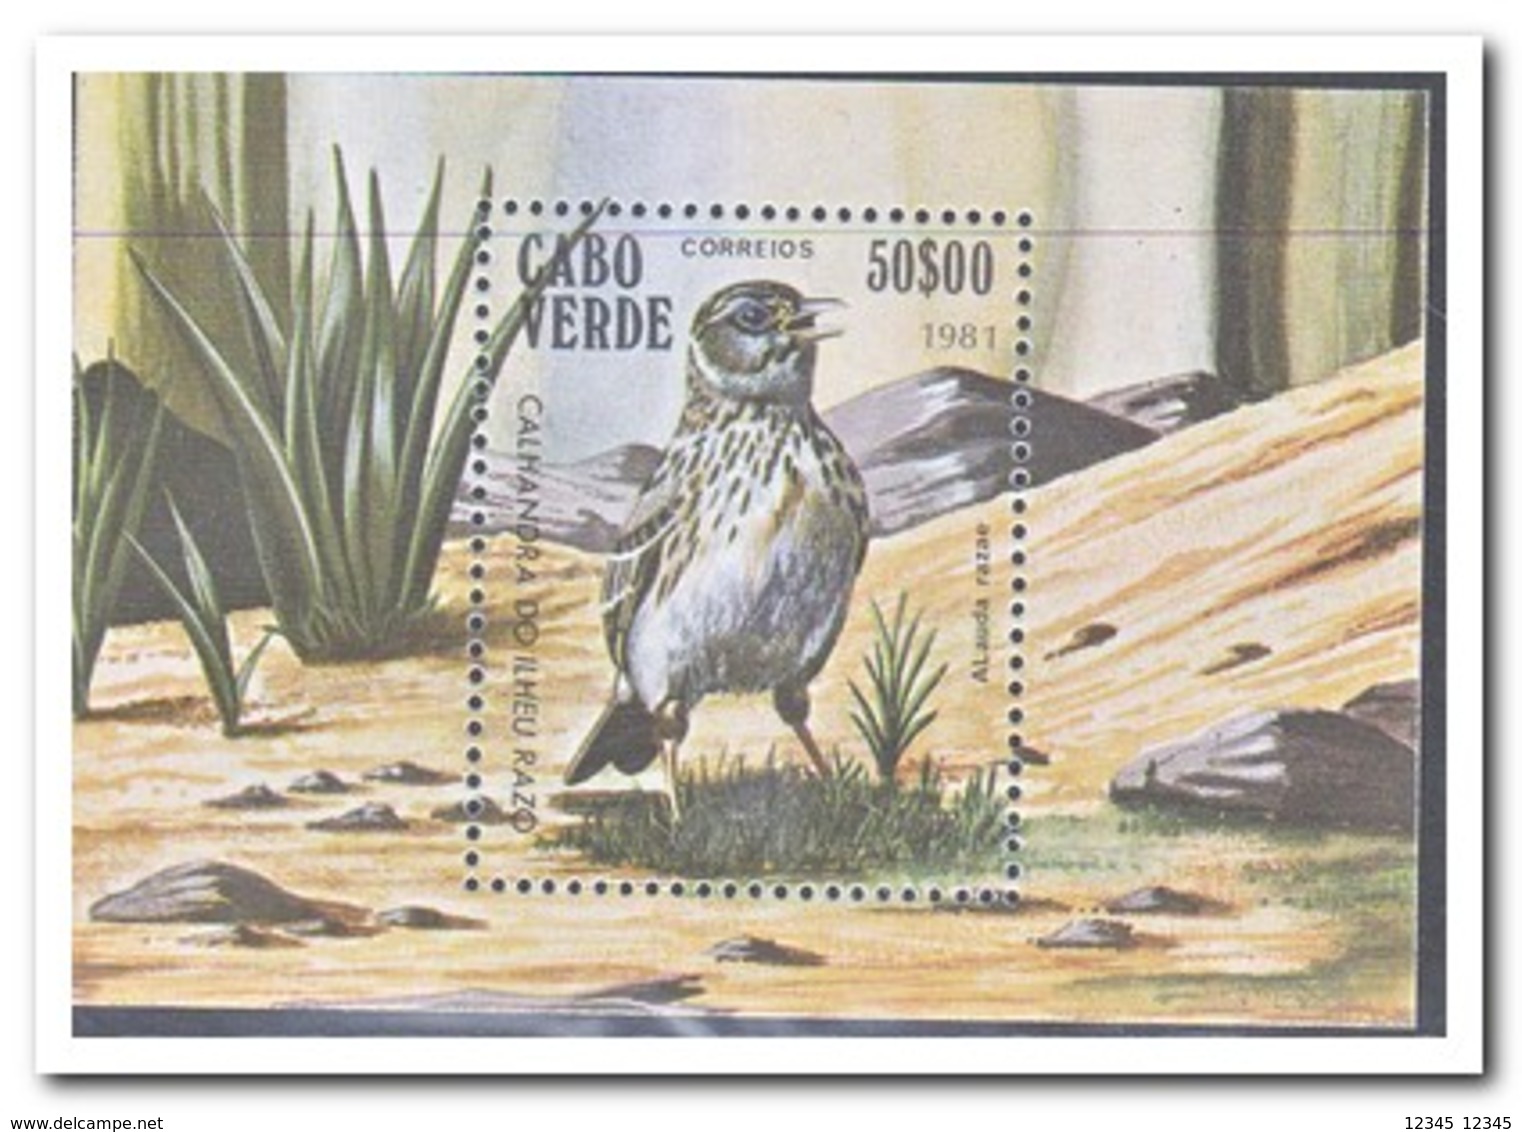 Kaapverdische Eilanden 1981, Postfris MNH, Birds - Kaapverdische Eilanden